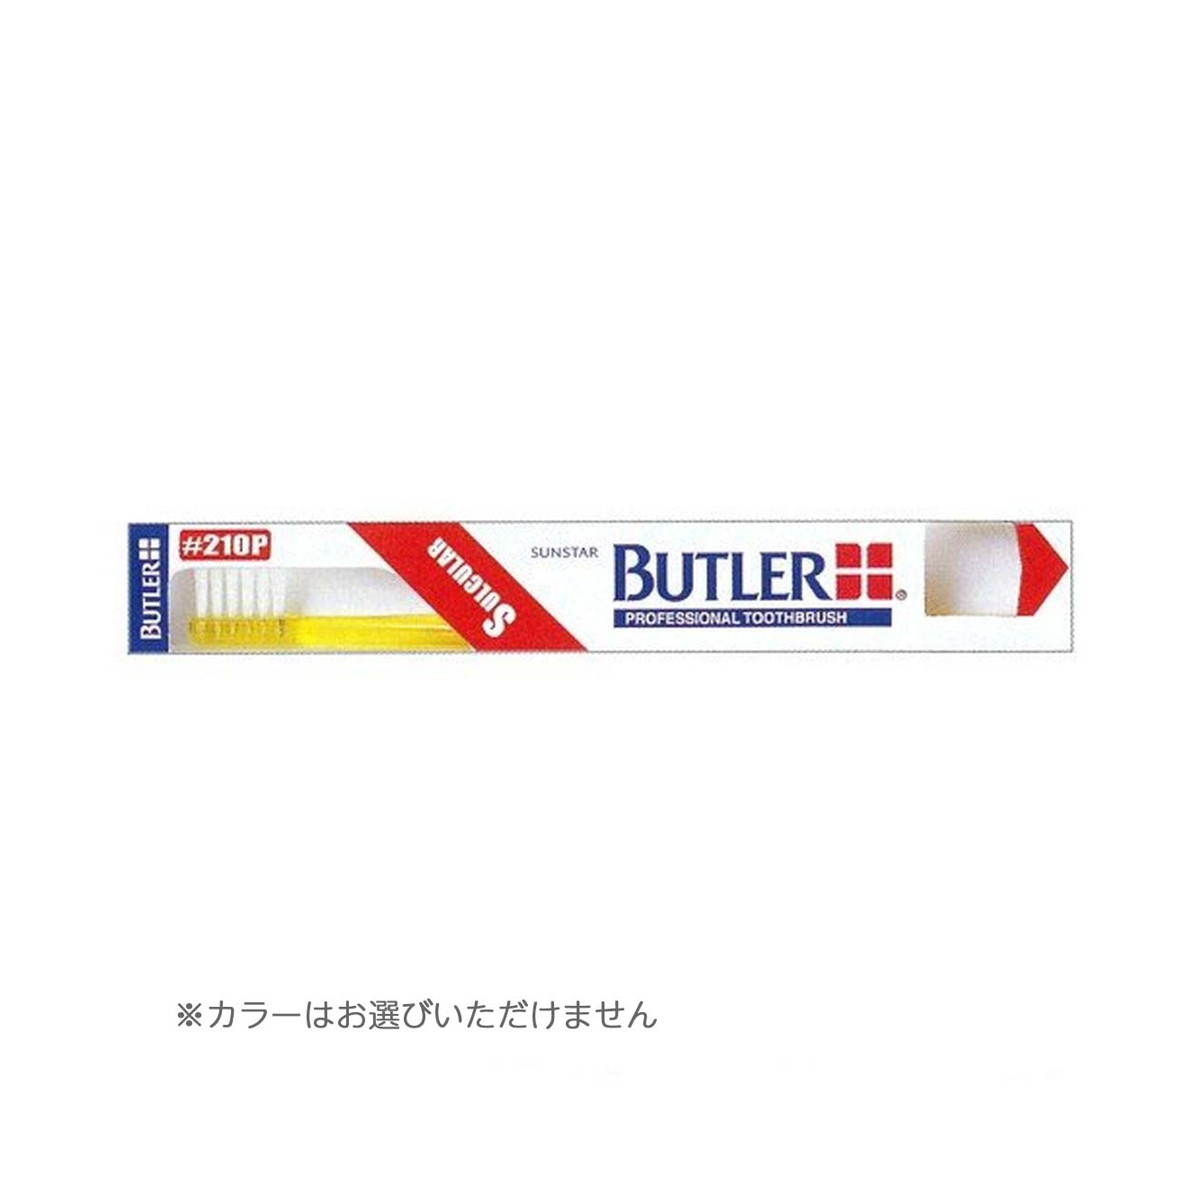 【送料込・まとめ買い×576個セット】サンスター BUTLER バトラー 歯ブラシ #210P 歯肉溝用 ※色は選べません